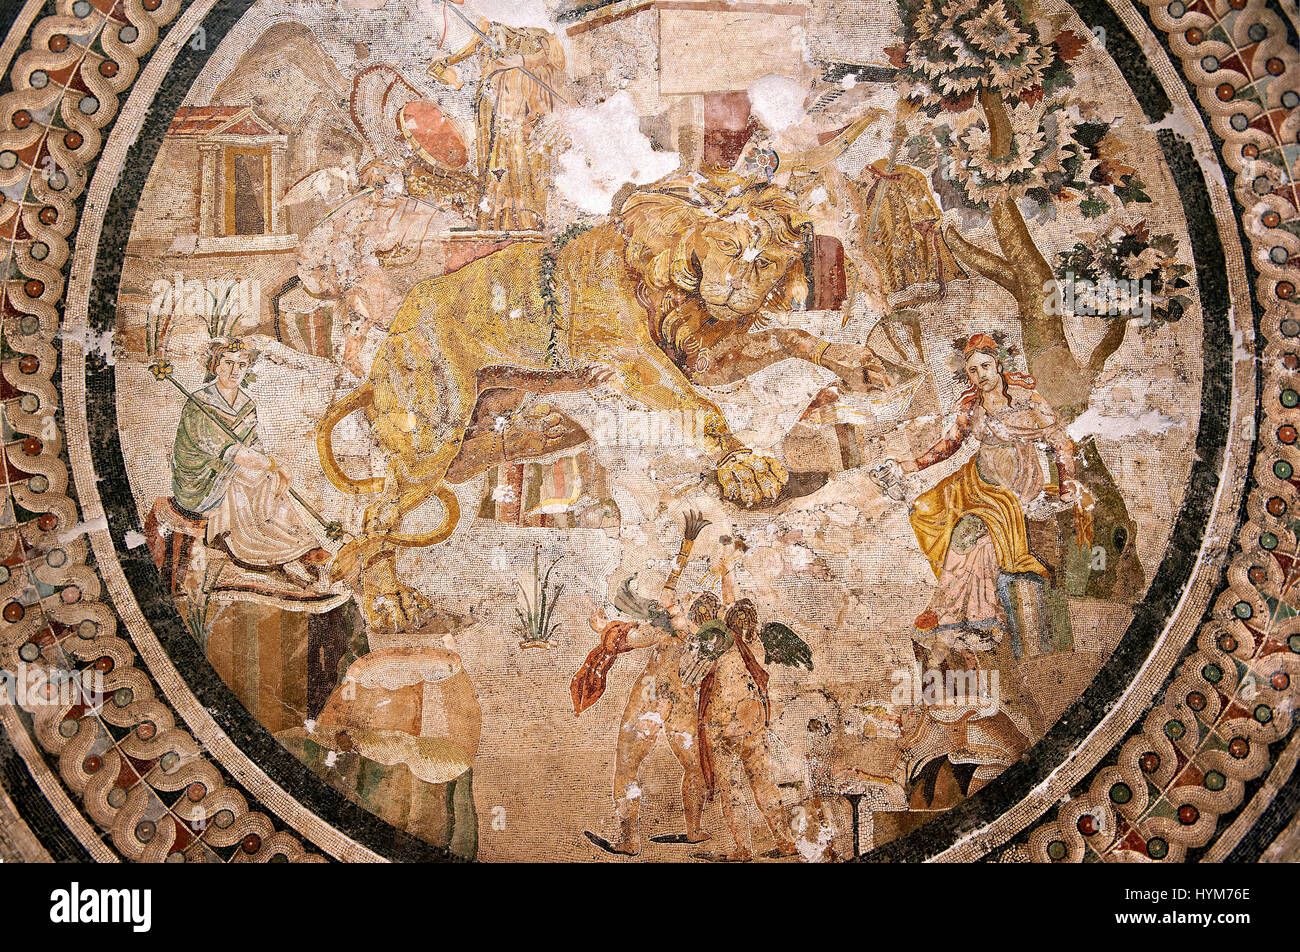 Mosaïque romaine d'une procession mythique, Pompéi, Naples, Italie Musum archéologique Banque D'Images